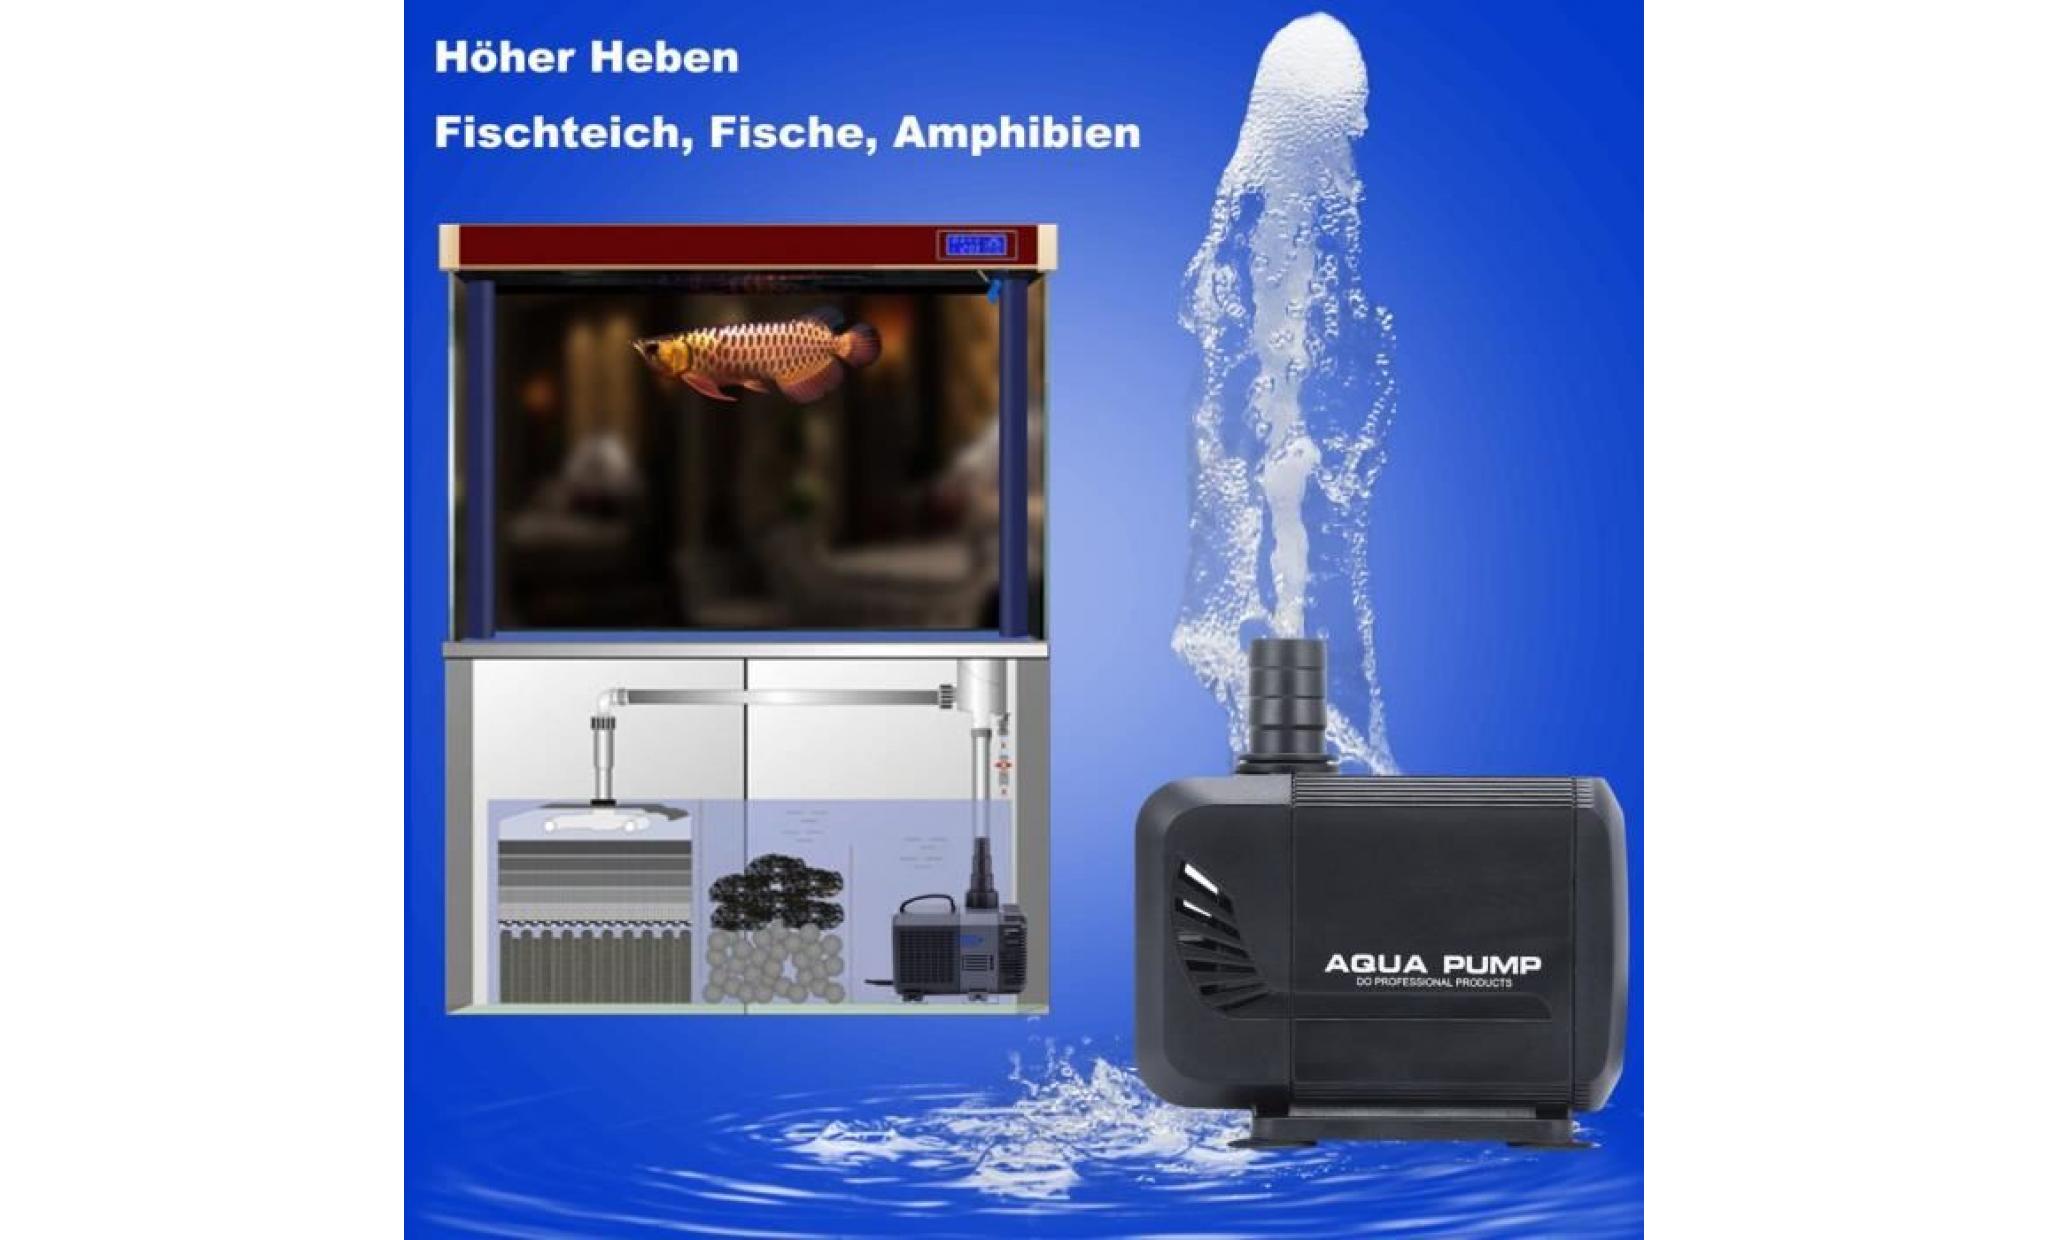 pompe submersible aquarium 72w 4500l/h ultra silencieux multifonction pompes à l'eau poisson fontaine piscine pas cher